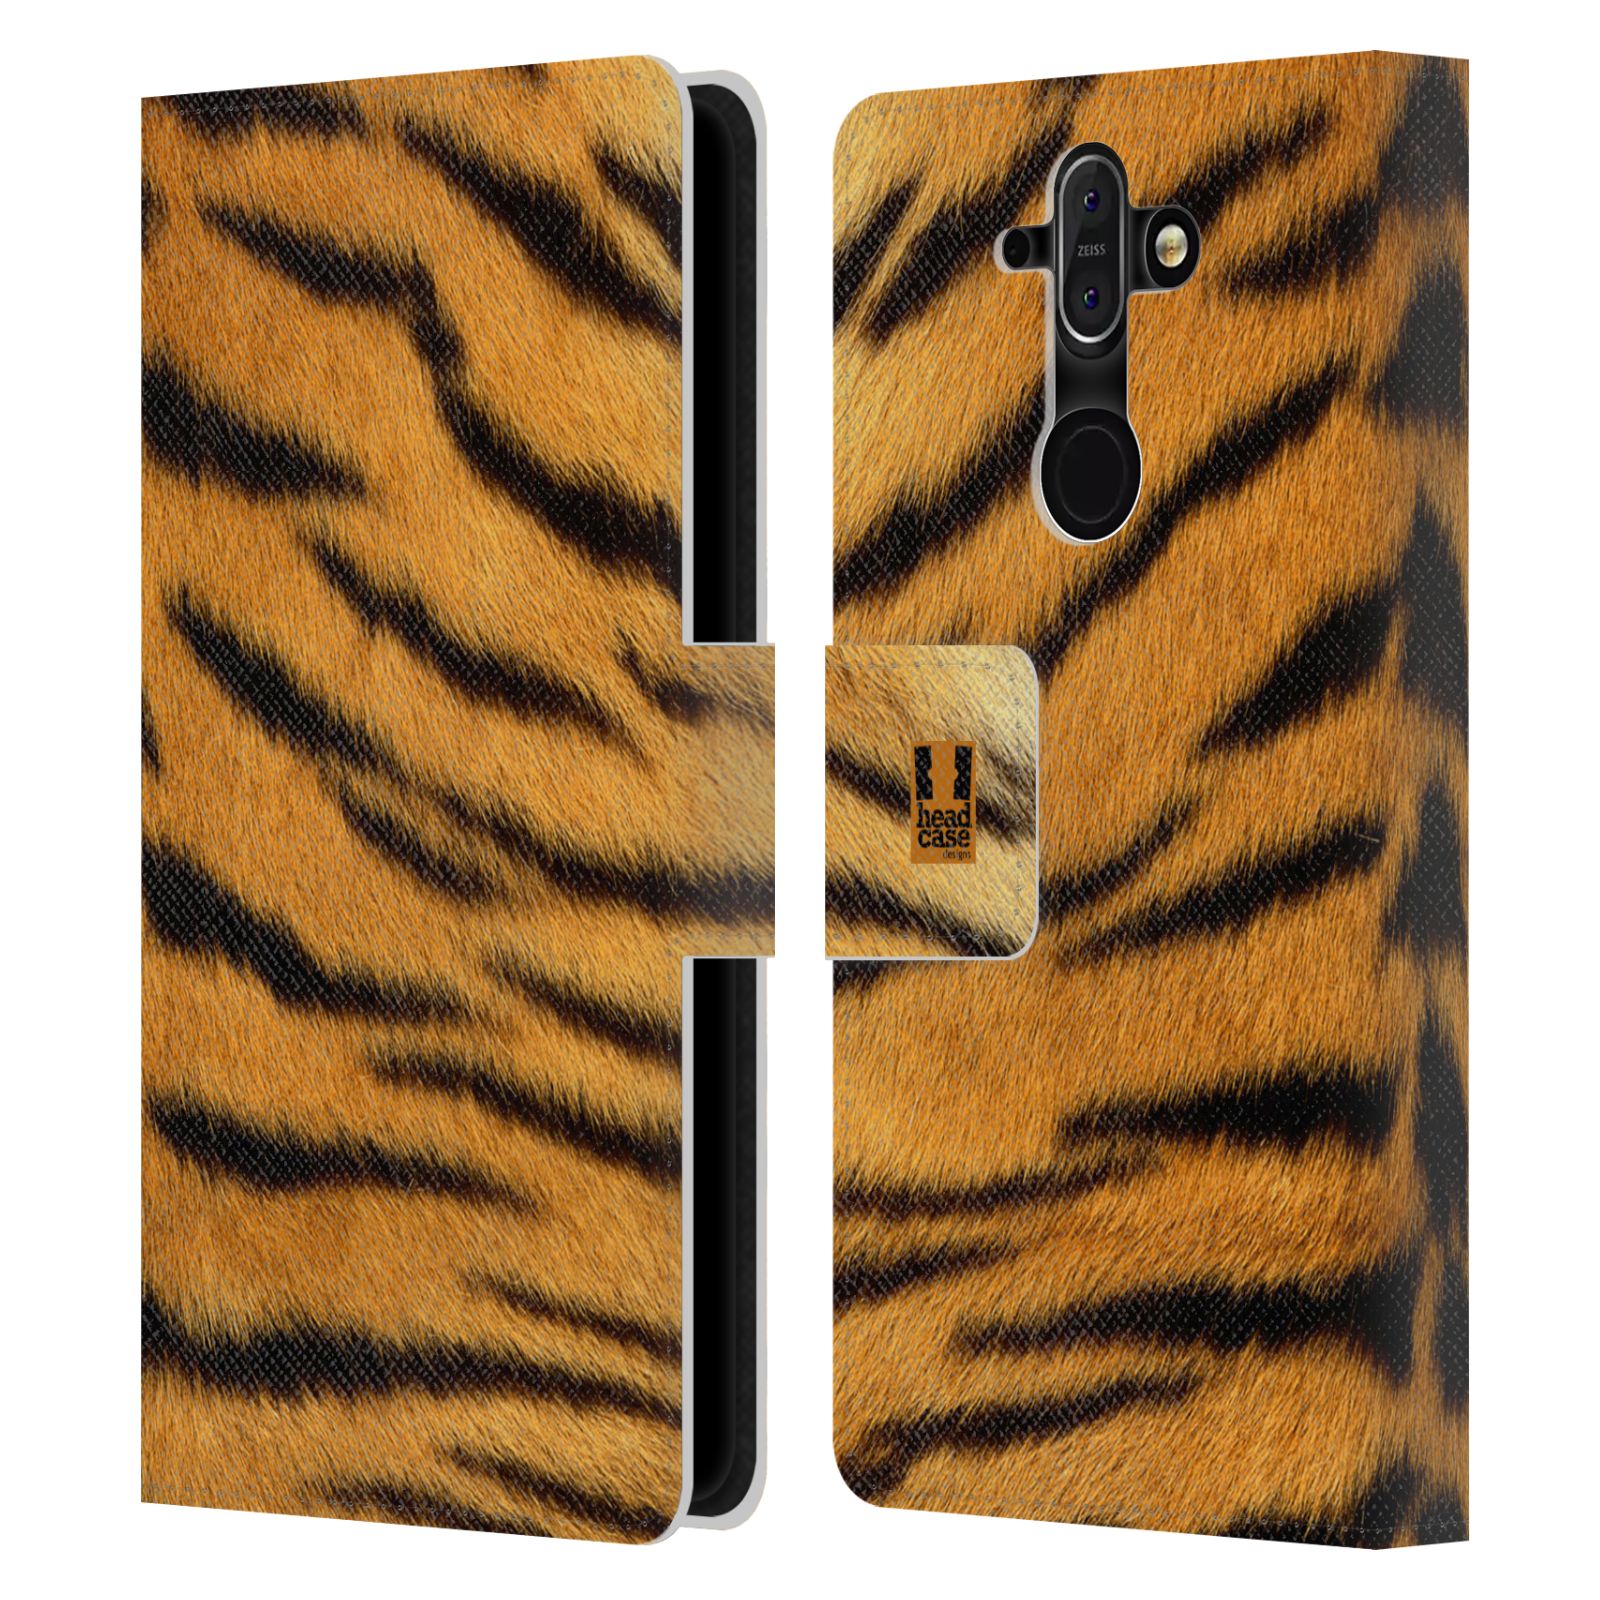 HEAD CASE Flipové pouzdro pro mobil Nokia 8 SIROCCO zvíře srst divoká kolekce tygr